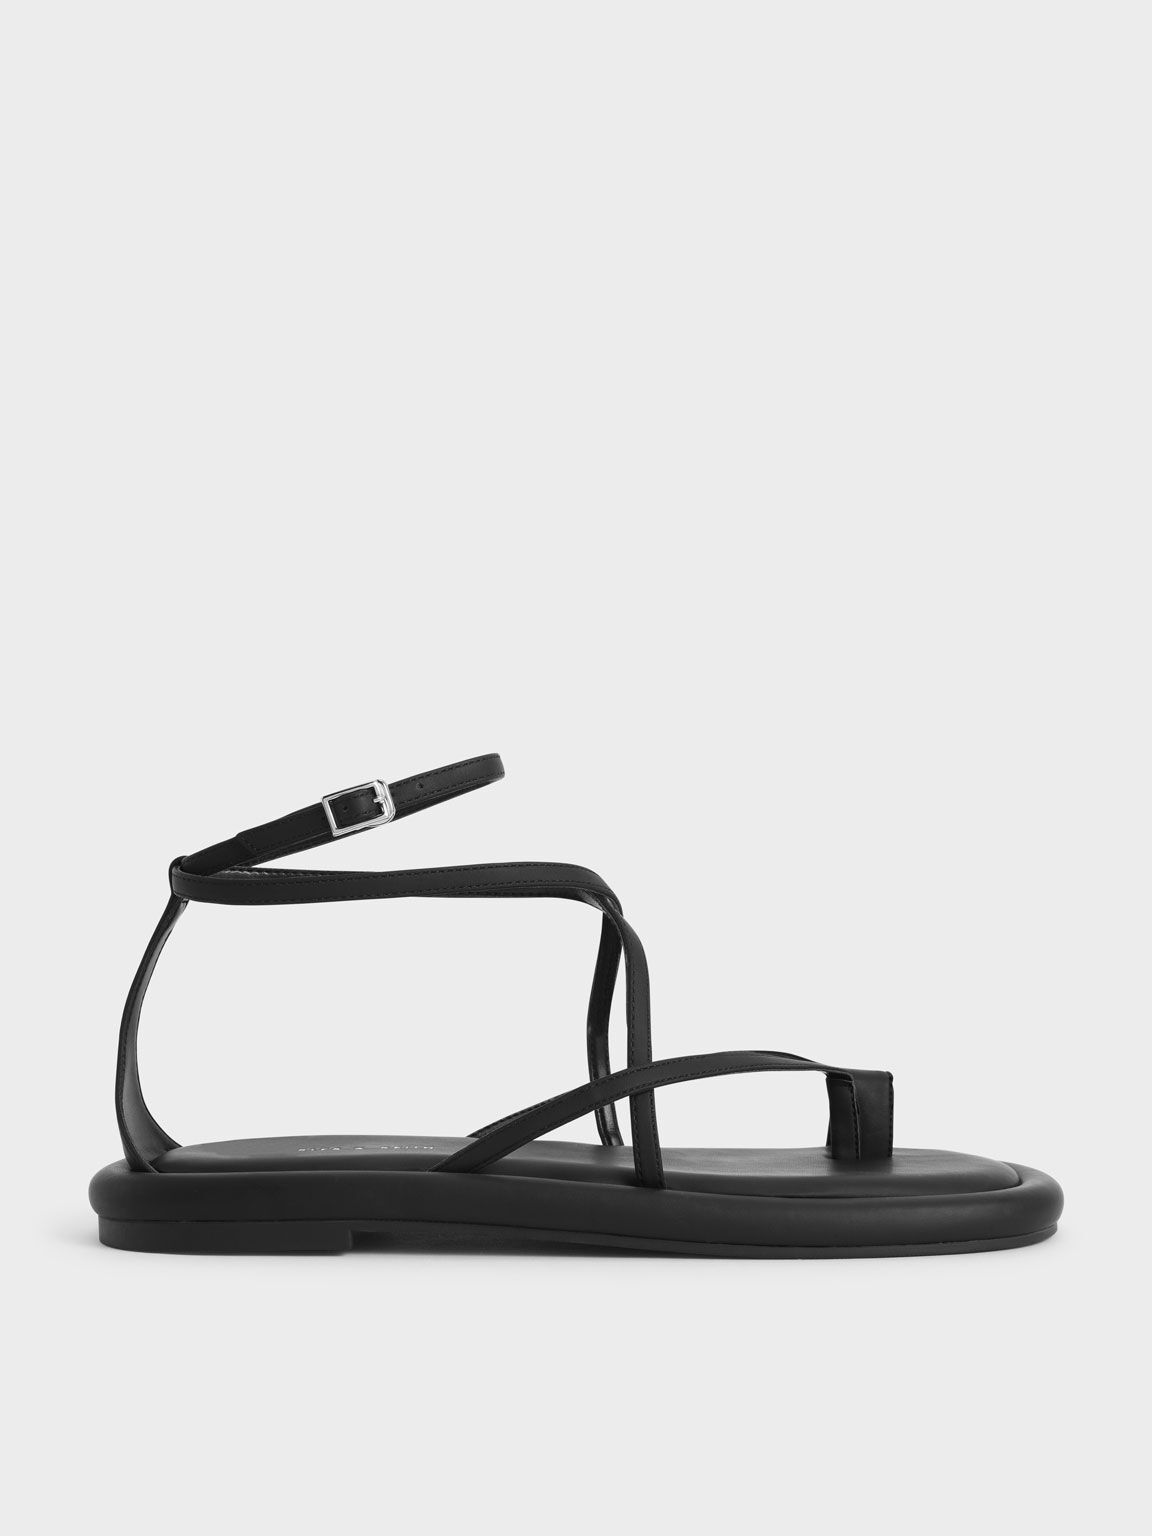 Padded Toe Loop Sandals, Black, hi-res